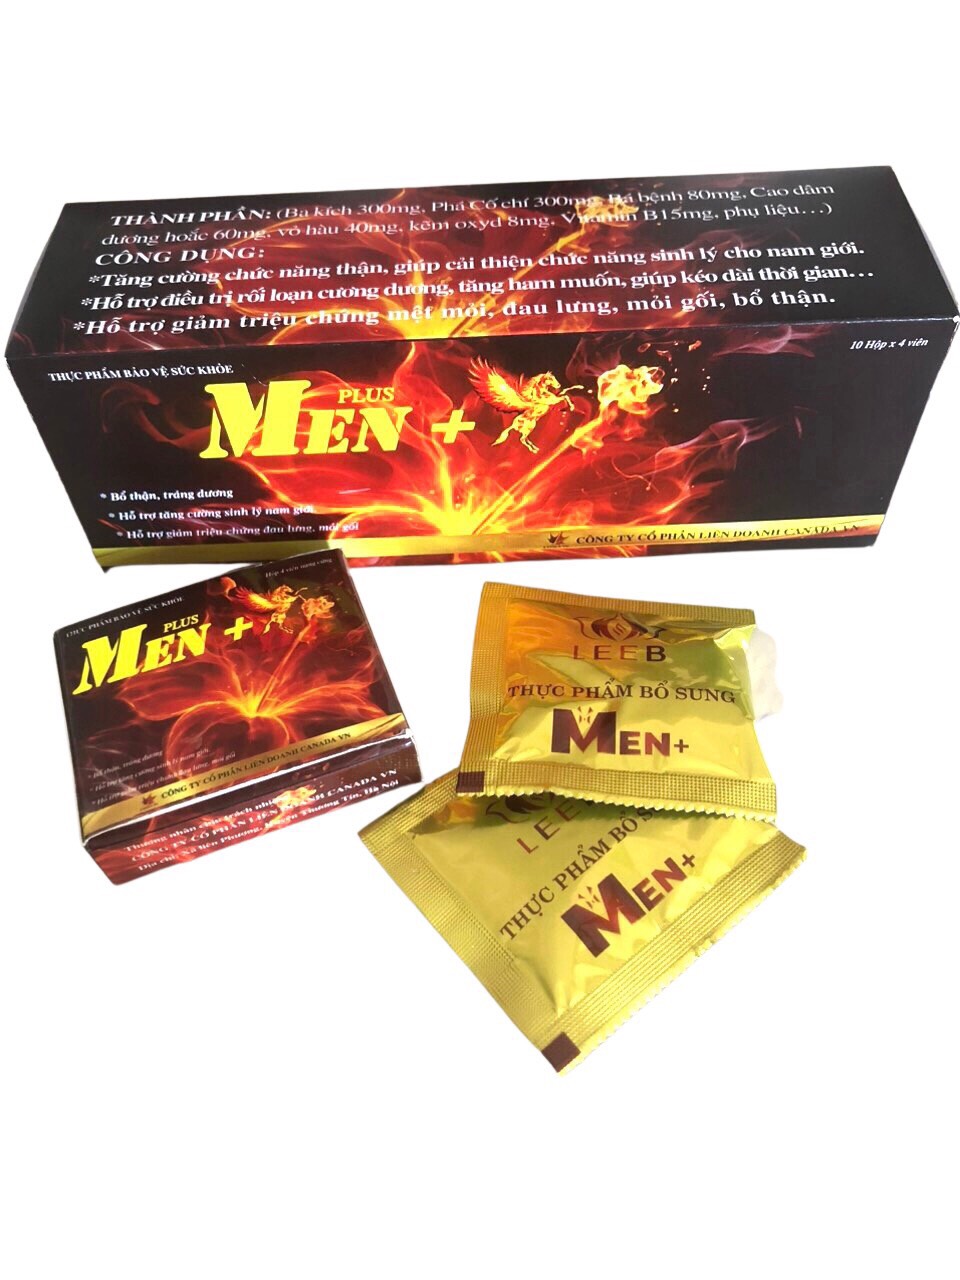 Men plus + (leeb men +, tương tự eva dream), tăng cường sinh lực, hộp lớn 10 hộp nhỏ (4 viên 1 hộp nhỏ)